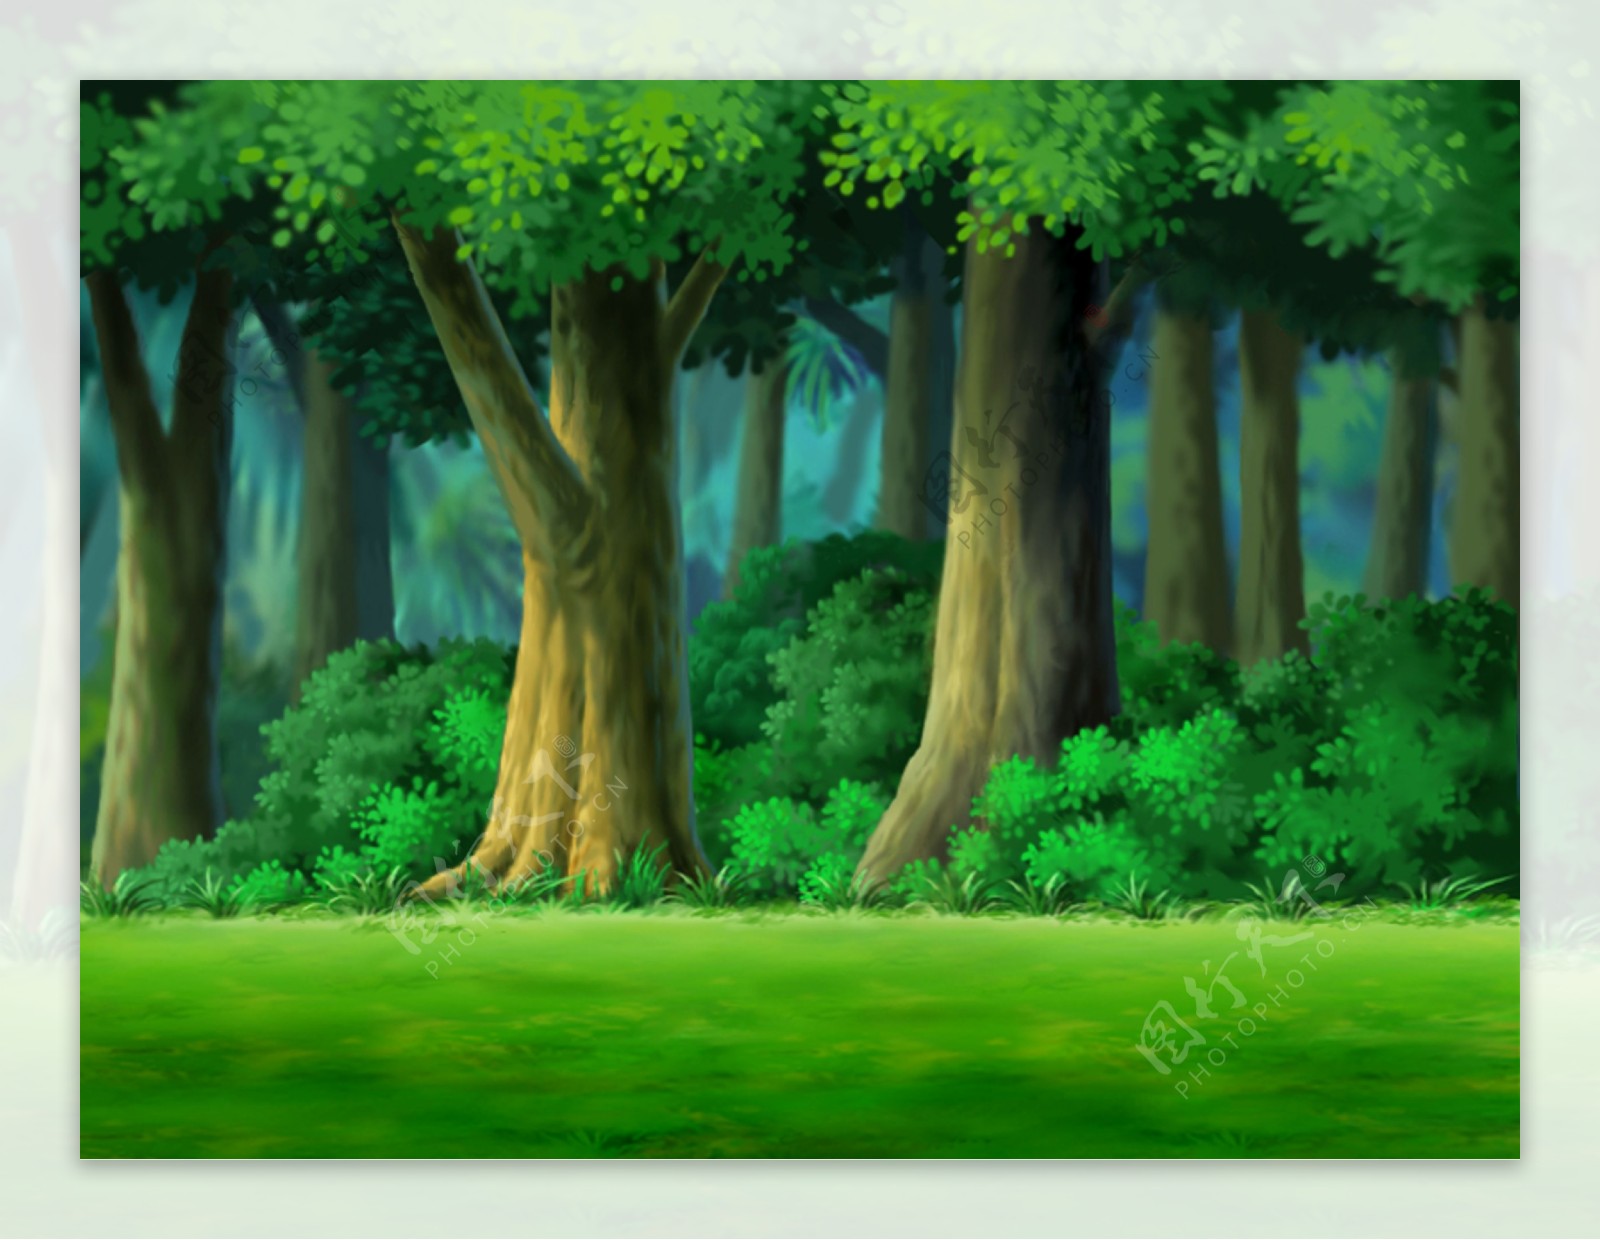 动画背景树林树丛图片